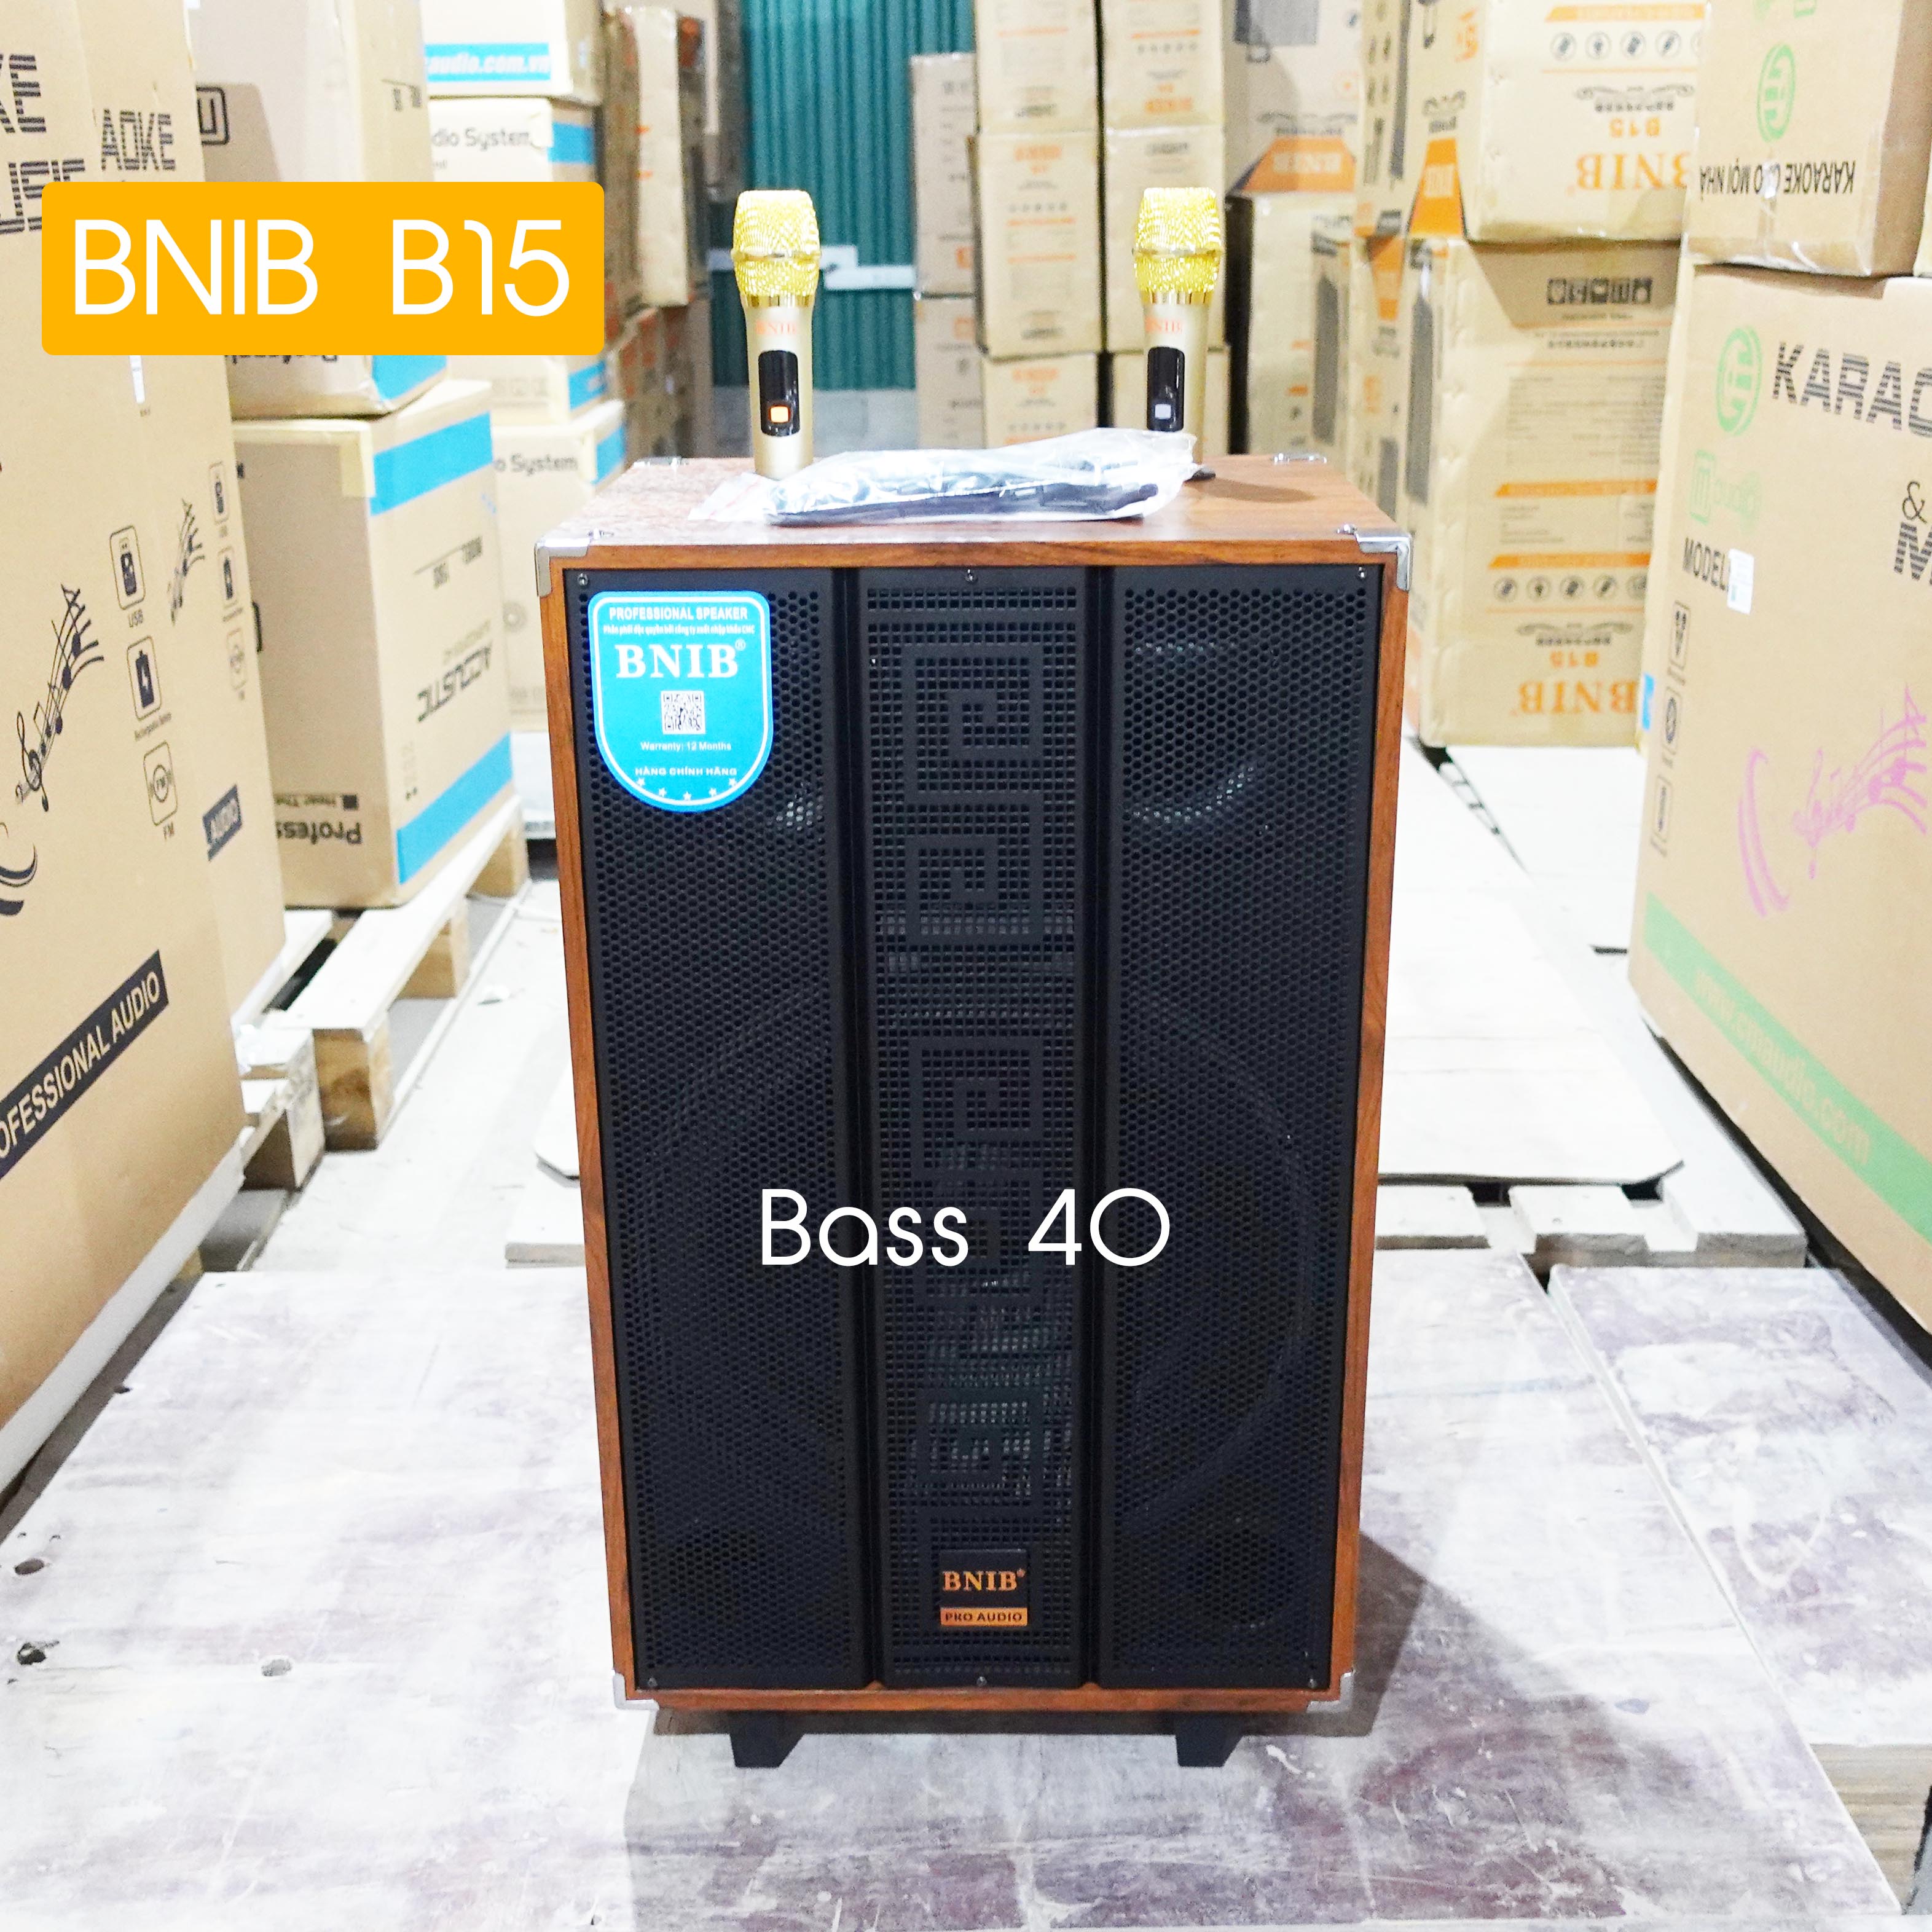 Loa kéo BNIB B15 Bass 40 3 đường tiếng vỏ gỗ sang trọng , 9 núm chỉnh âm thanh, tặng kèm 2 tay mic không dây sóng UHF